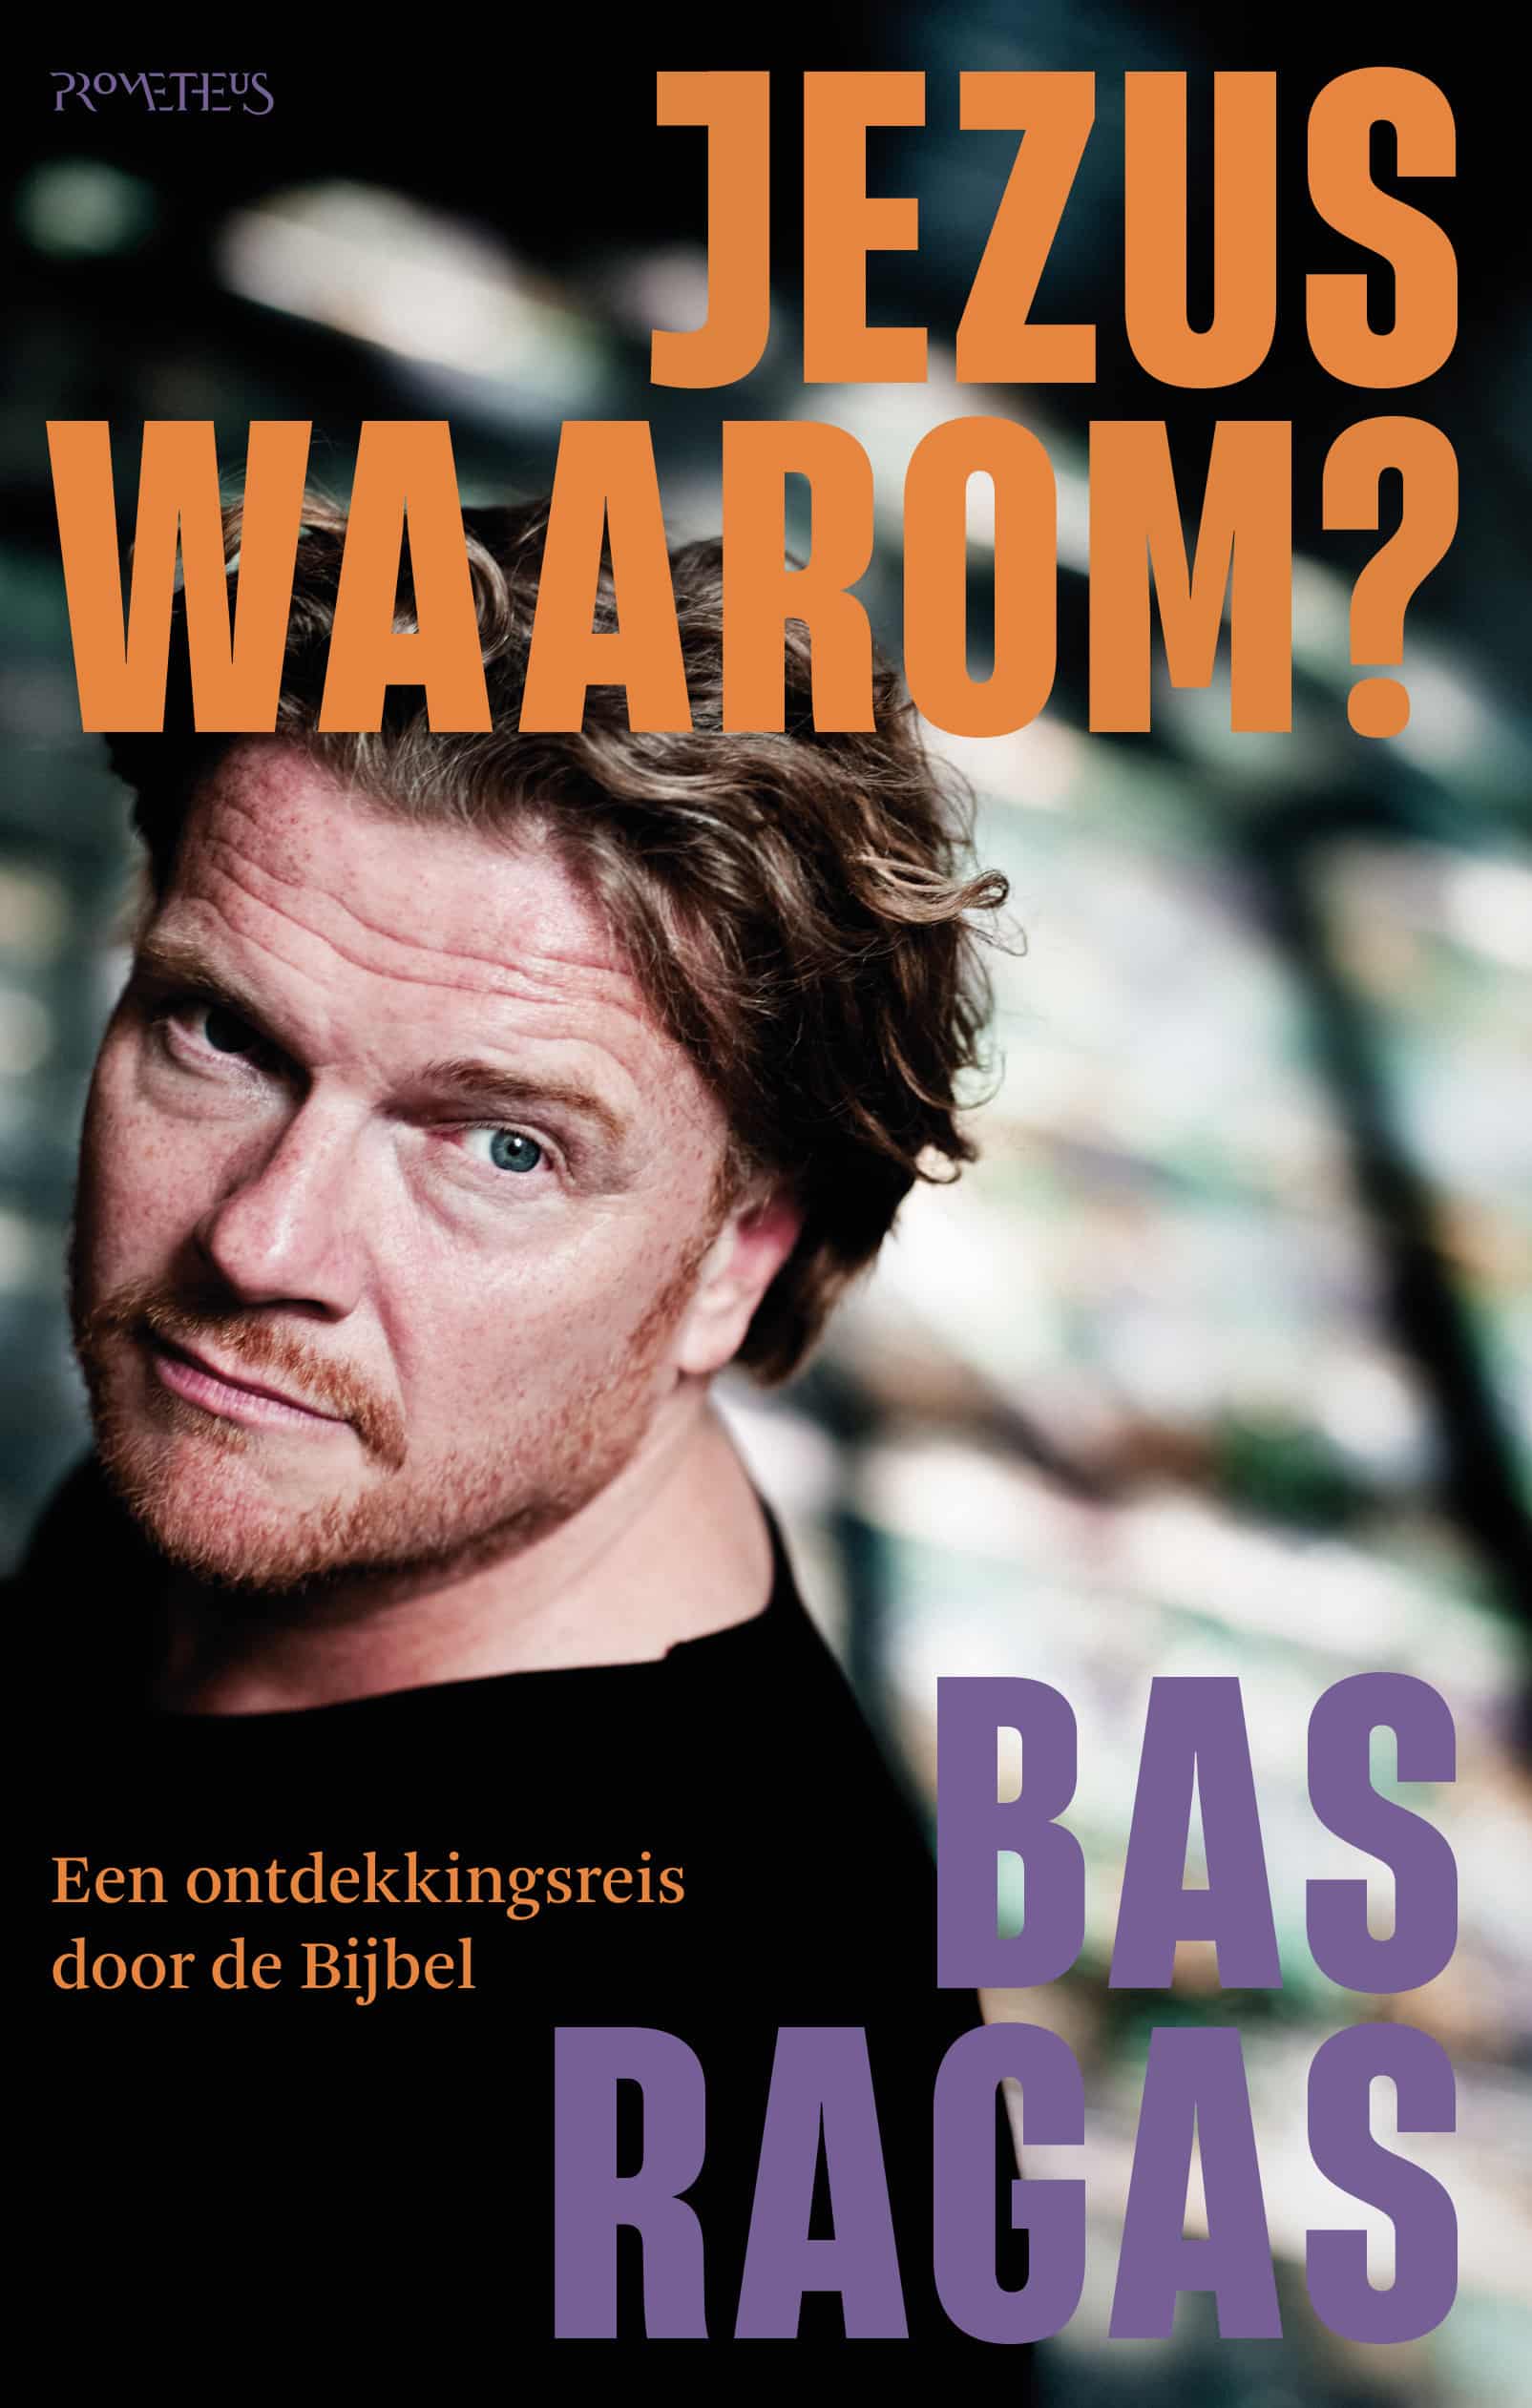 Bas Ragas en Ad van Nieuwpoort presenteren hun boek ‘Jezus, waarom?’